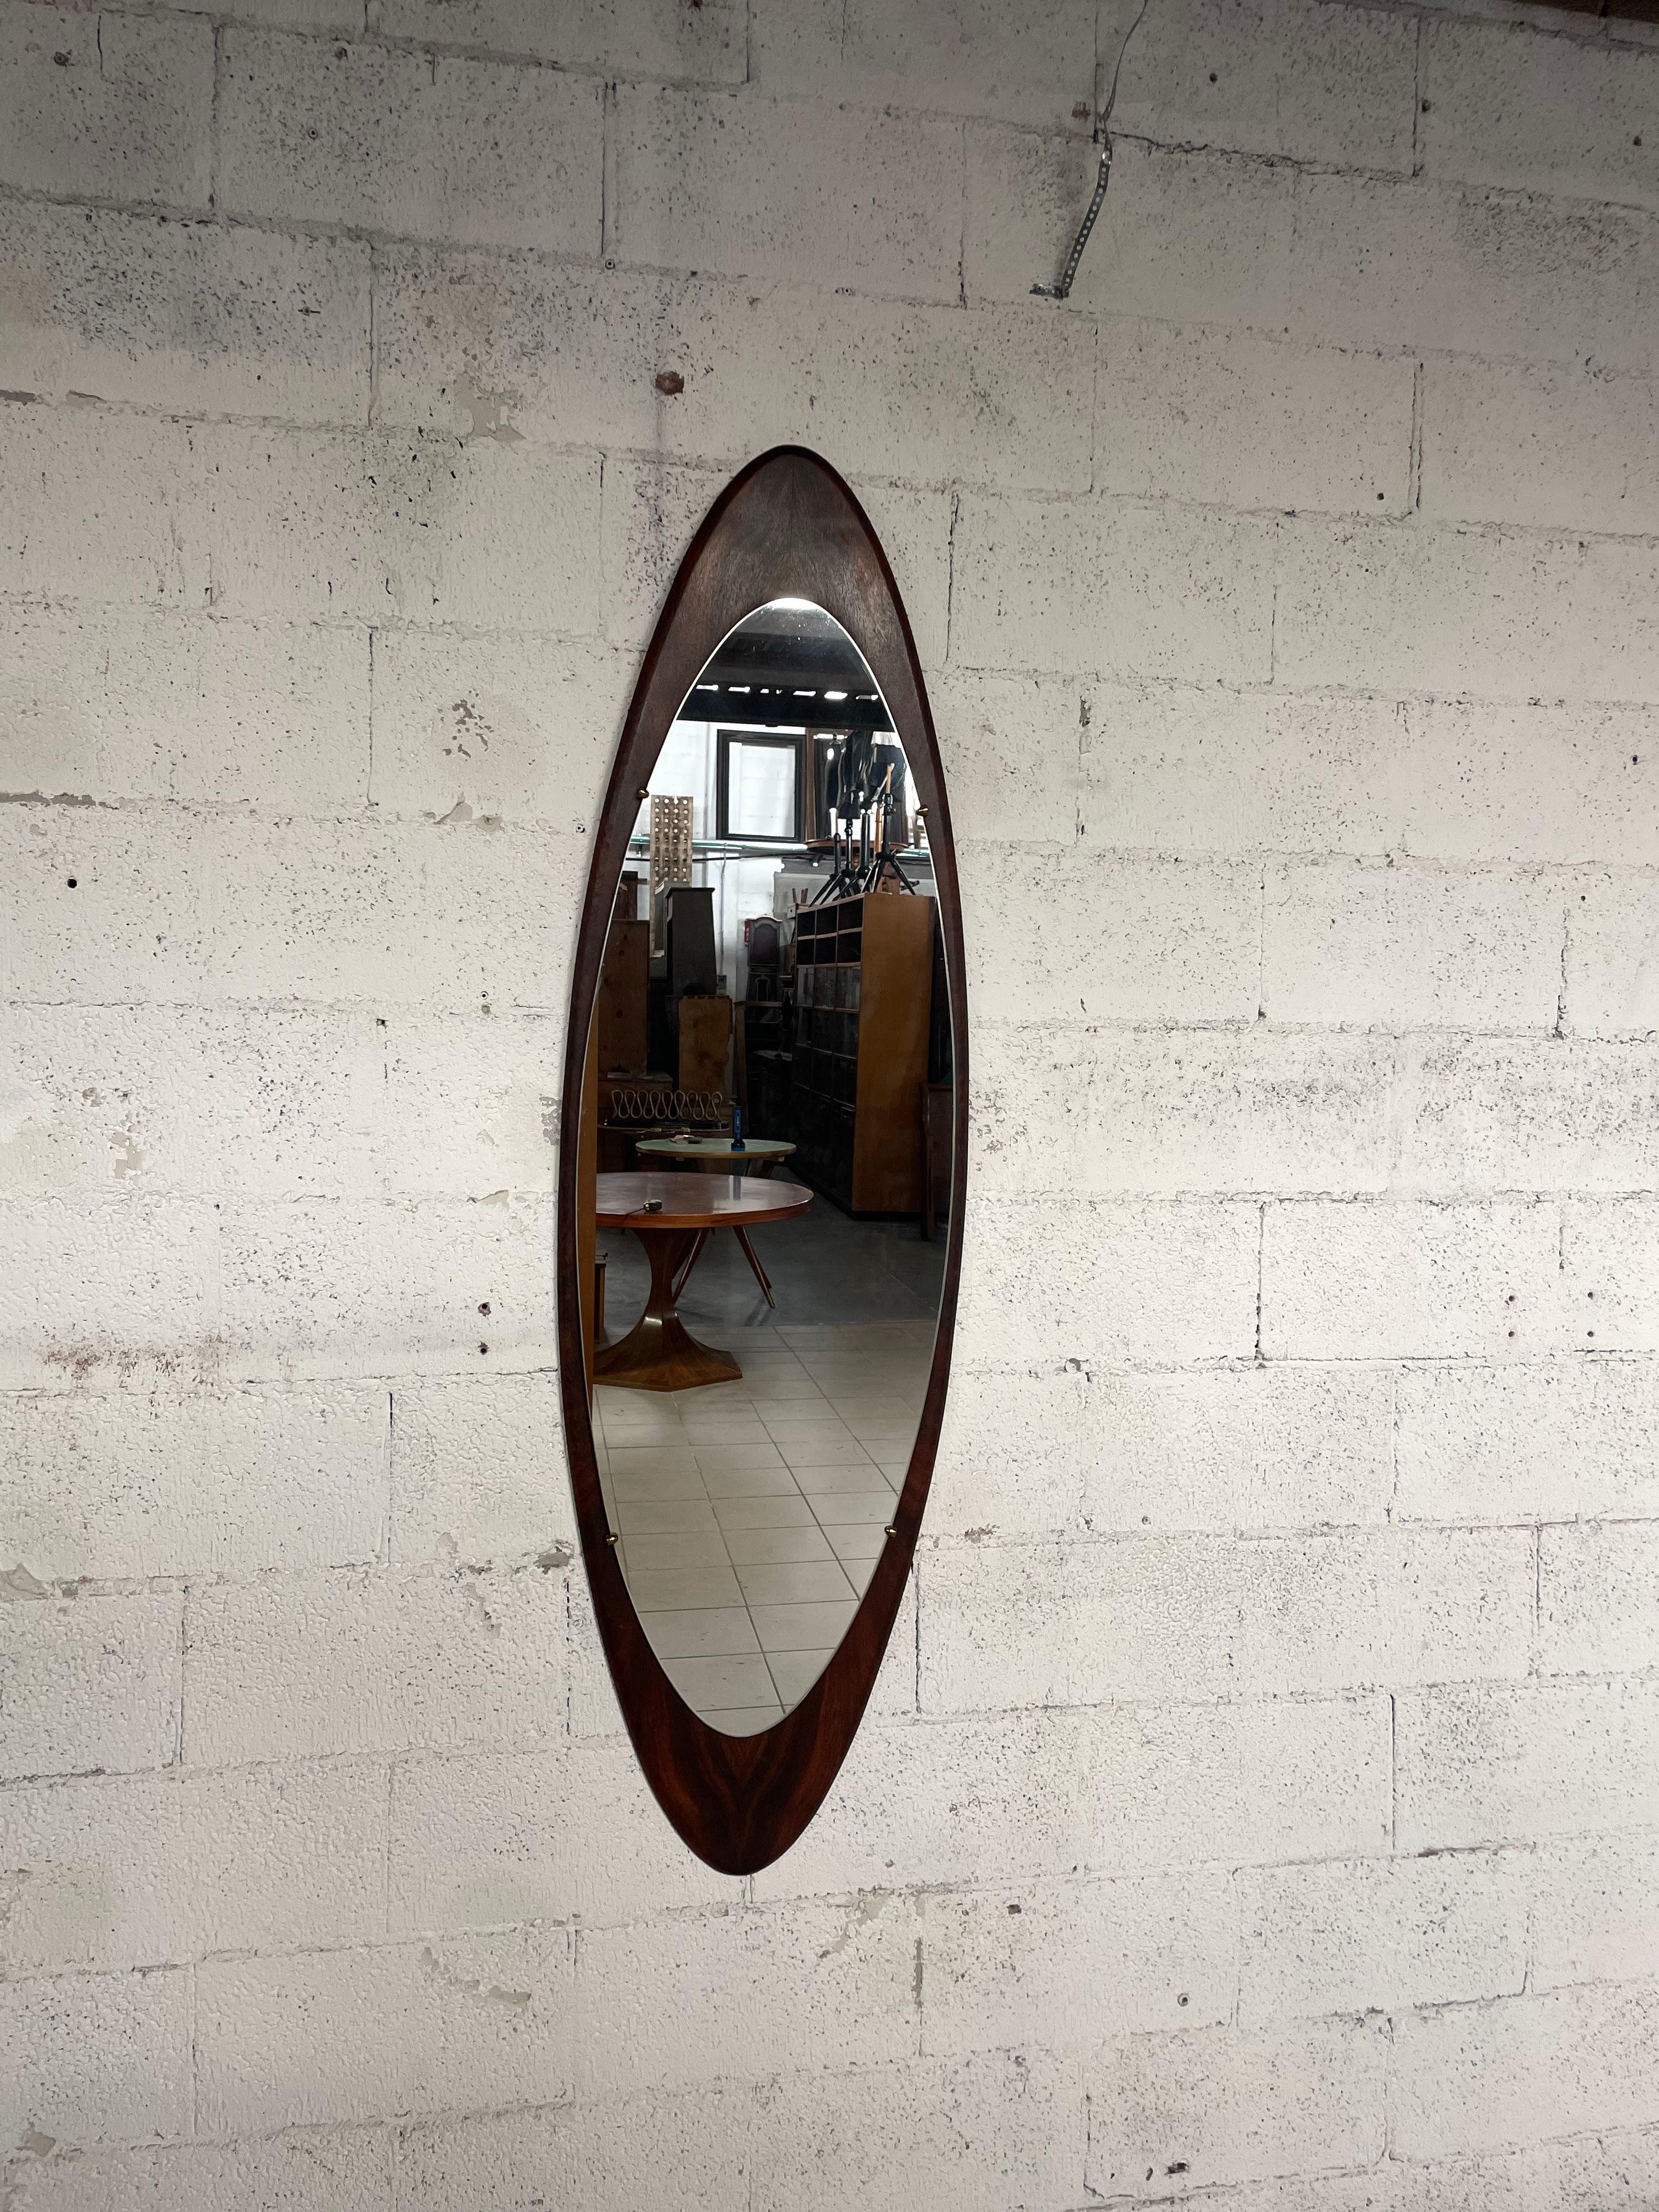 Großer ovaler Spiegel aus italienischer Produktion, 1960er Jahre.

Rosenholzrahmen und Spiegelsockel, Messingdetails verleihen diesem Möbelstück Eleganz.